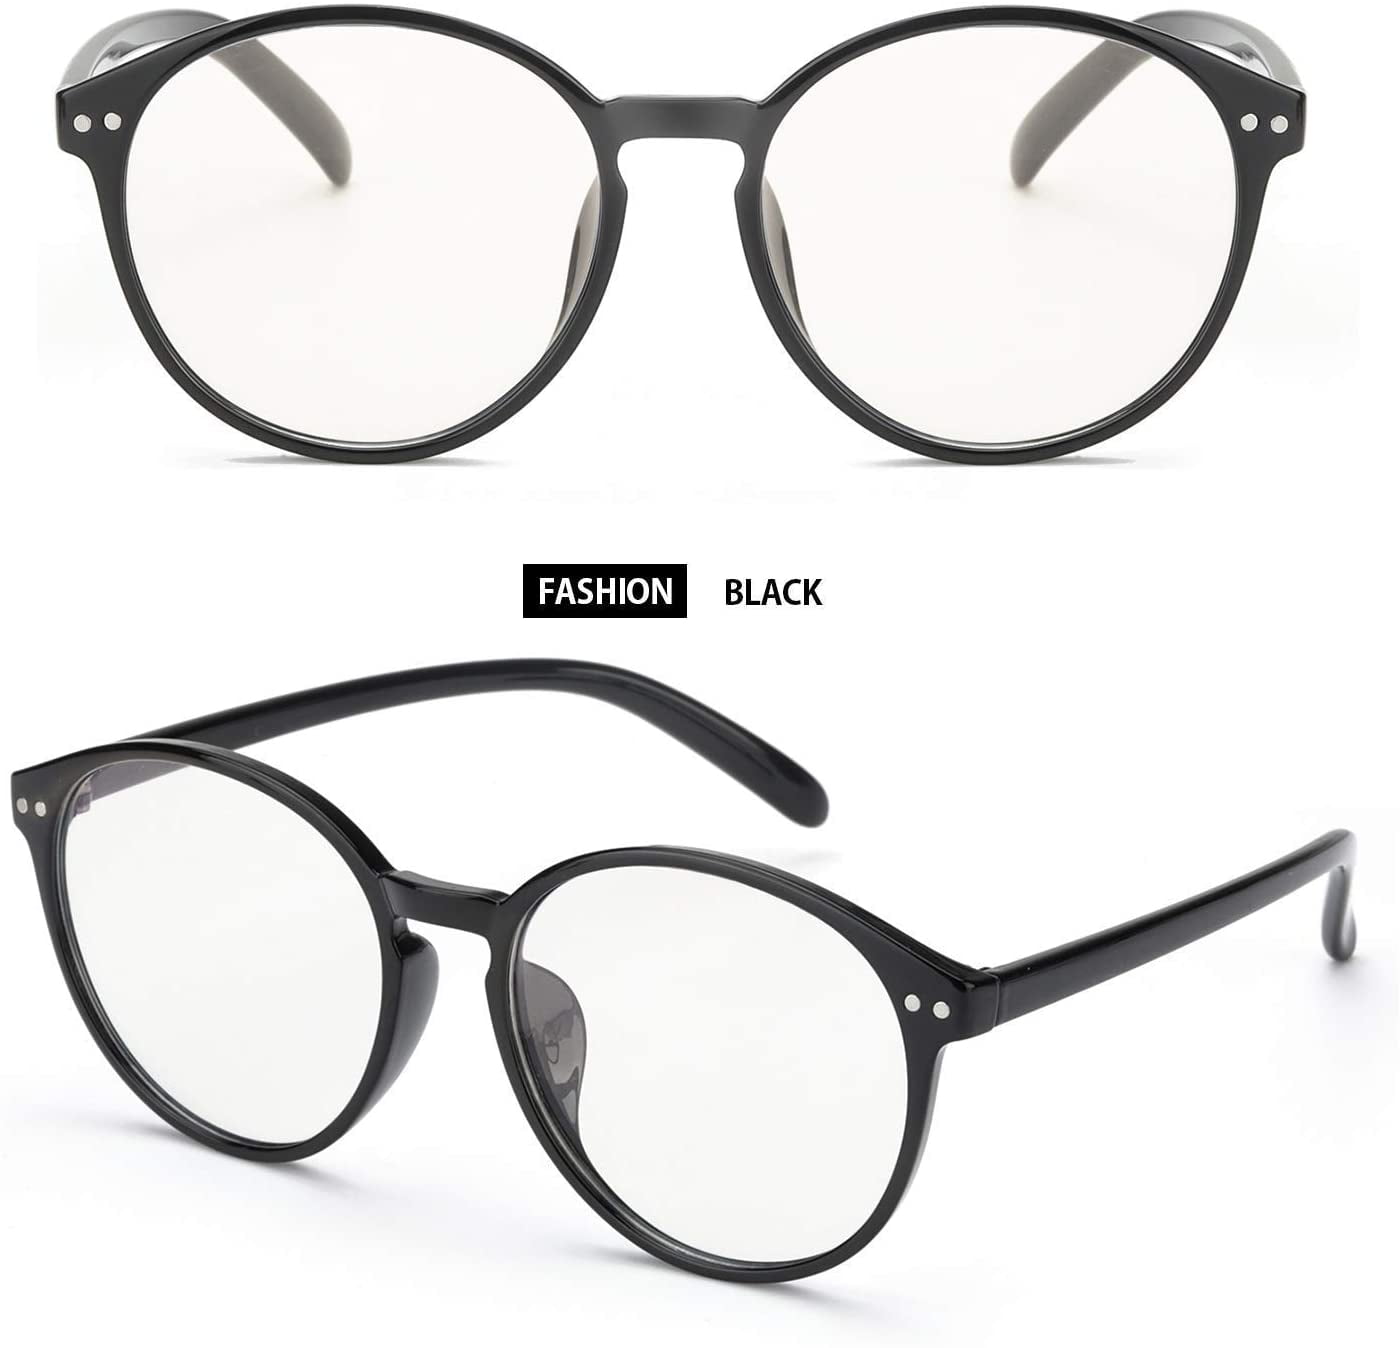 2er pack x-Cruze ® vélo lunettes style Nerd Lunettes de soleil Lunettes Homme Femme Noir 